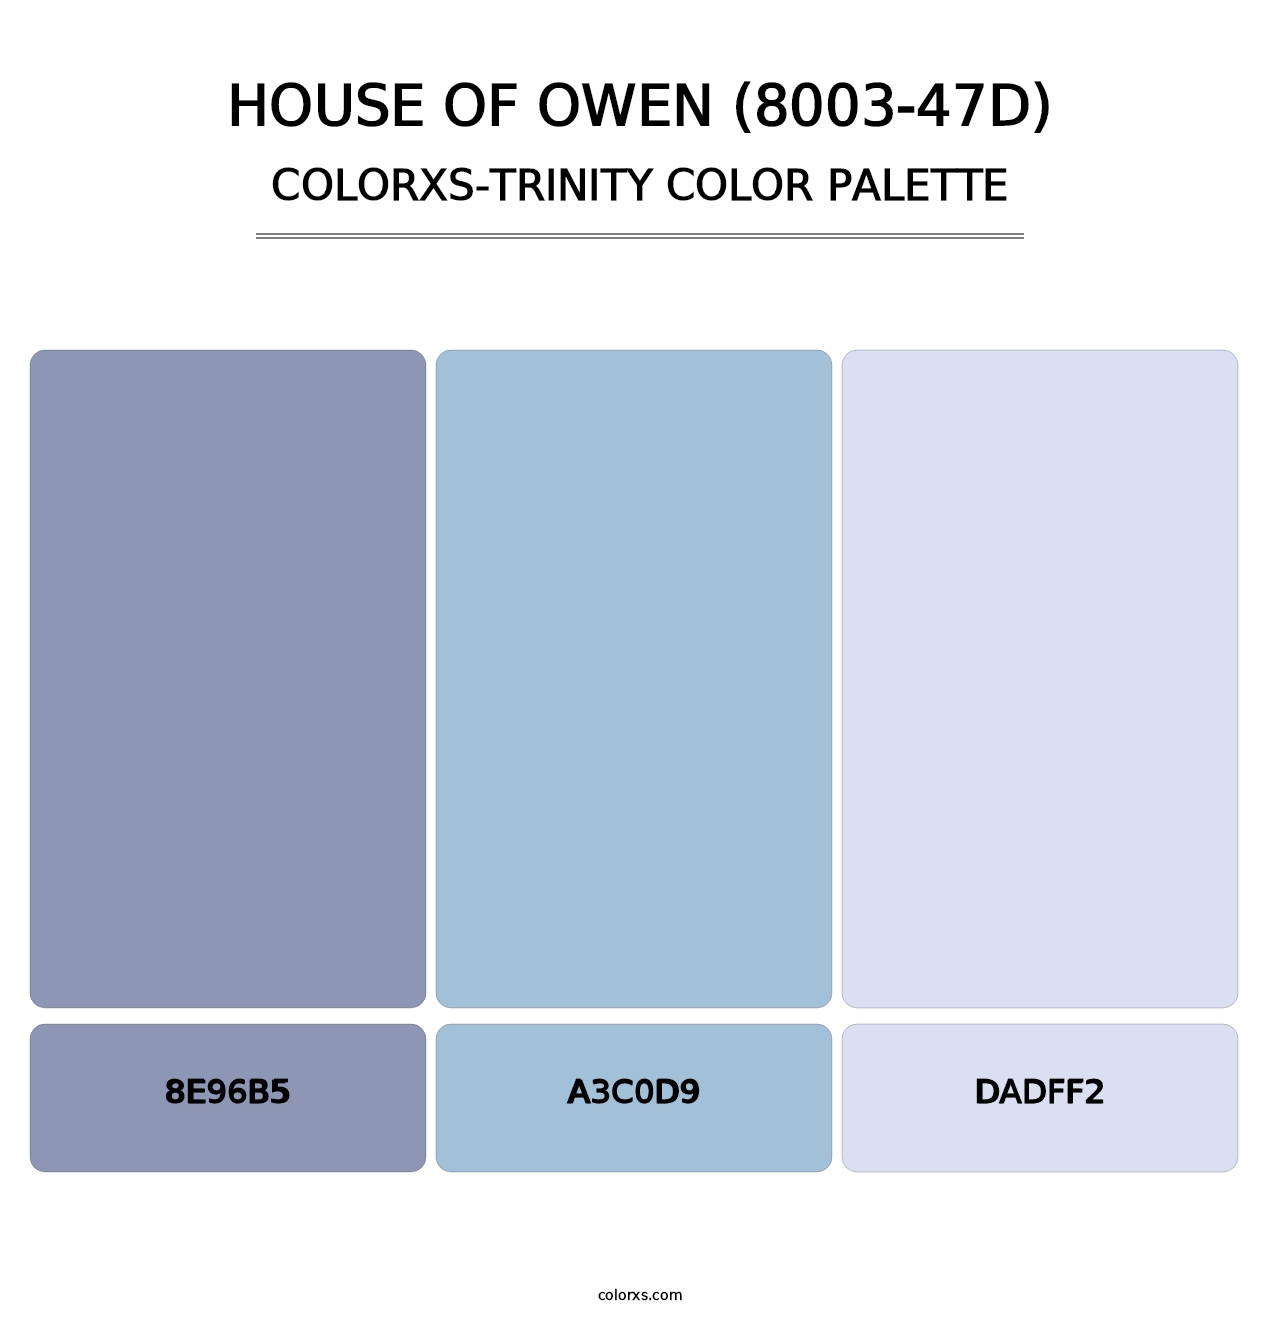 House of Owen (8003-47D) - Colorxs Trinity Palette